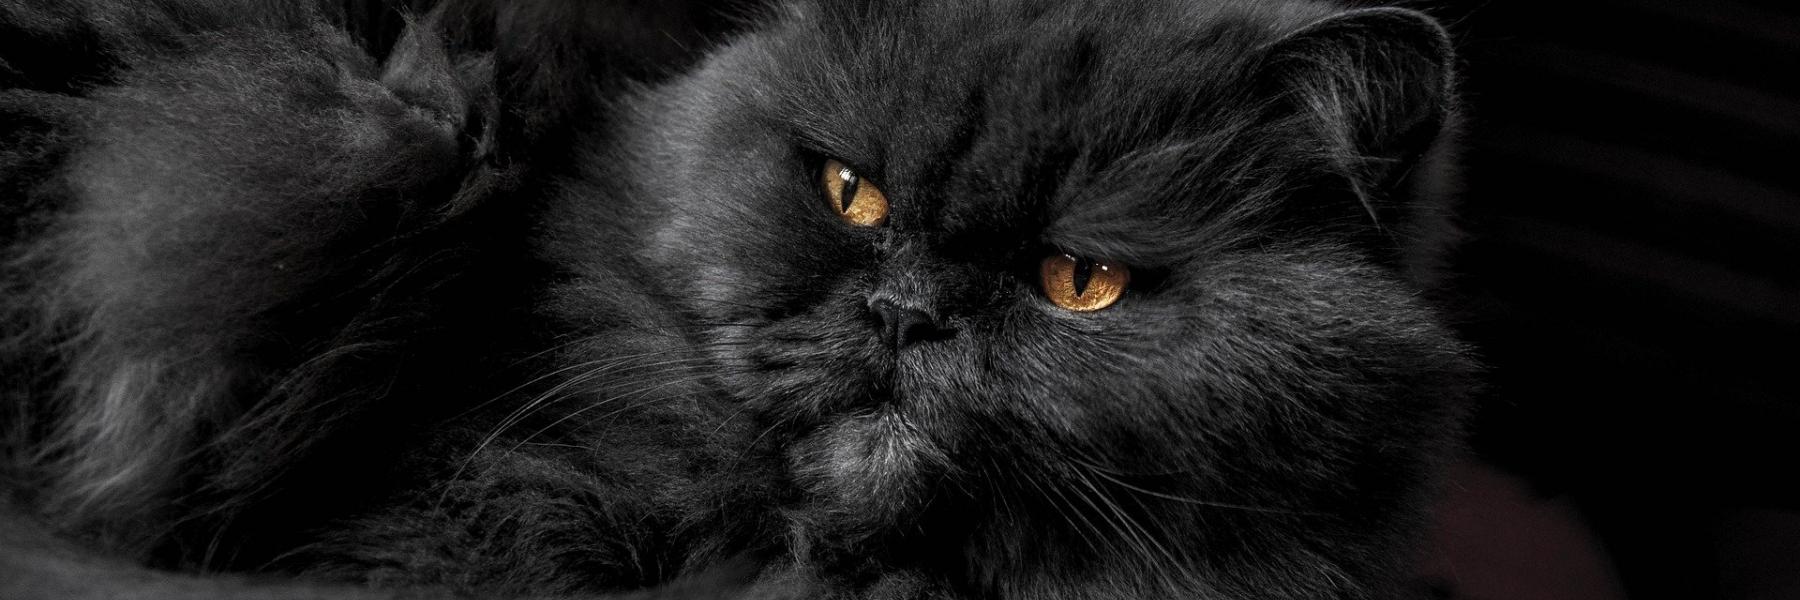 At se en sort kat i en drøm